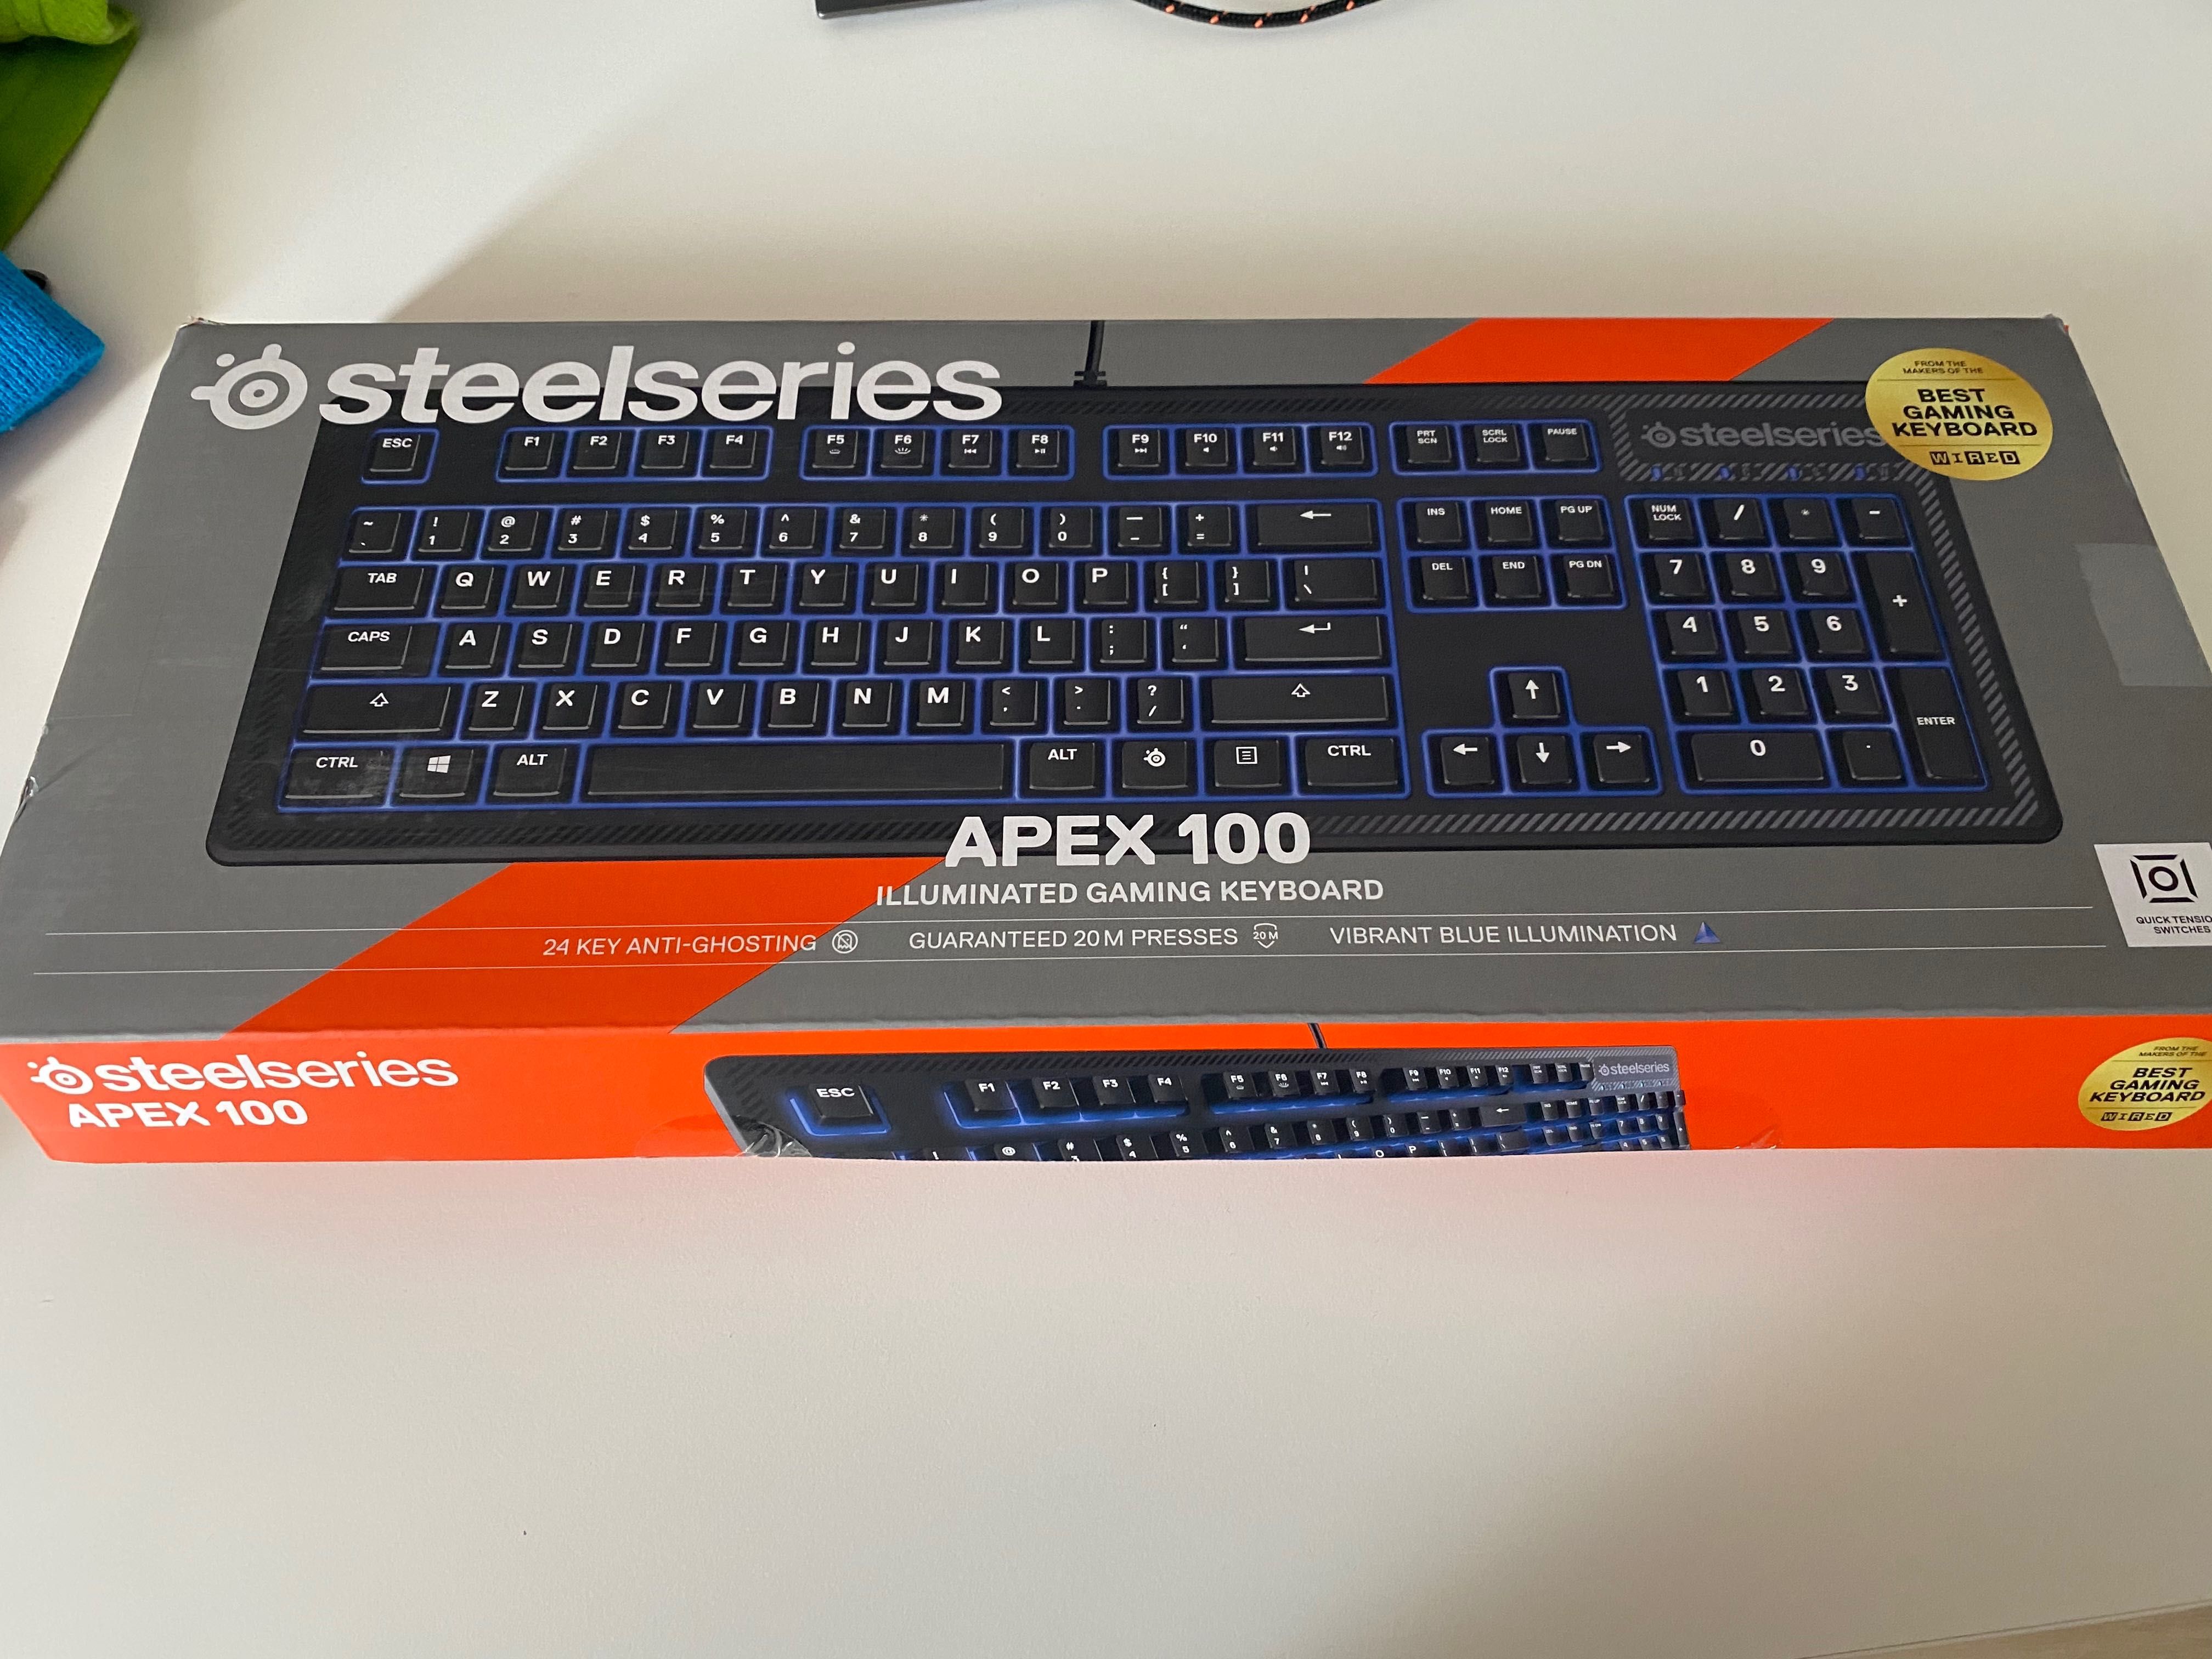 Tastatura gaming taste luminate Steelseries APEX 100 - este noua